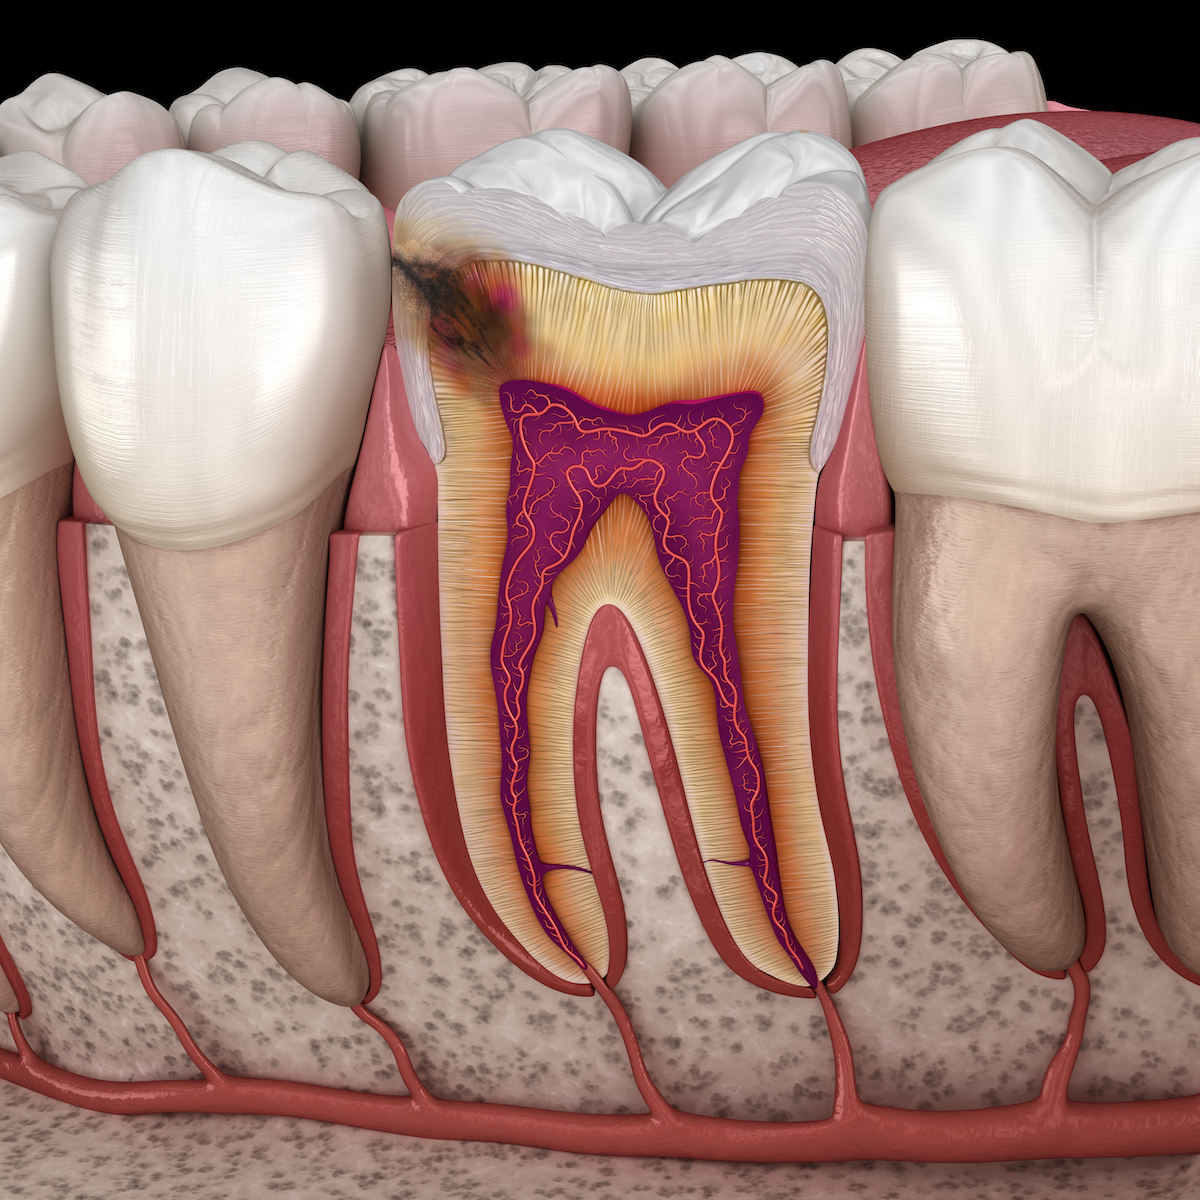 cavities, caries, dental cavity, filling